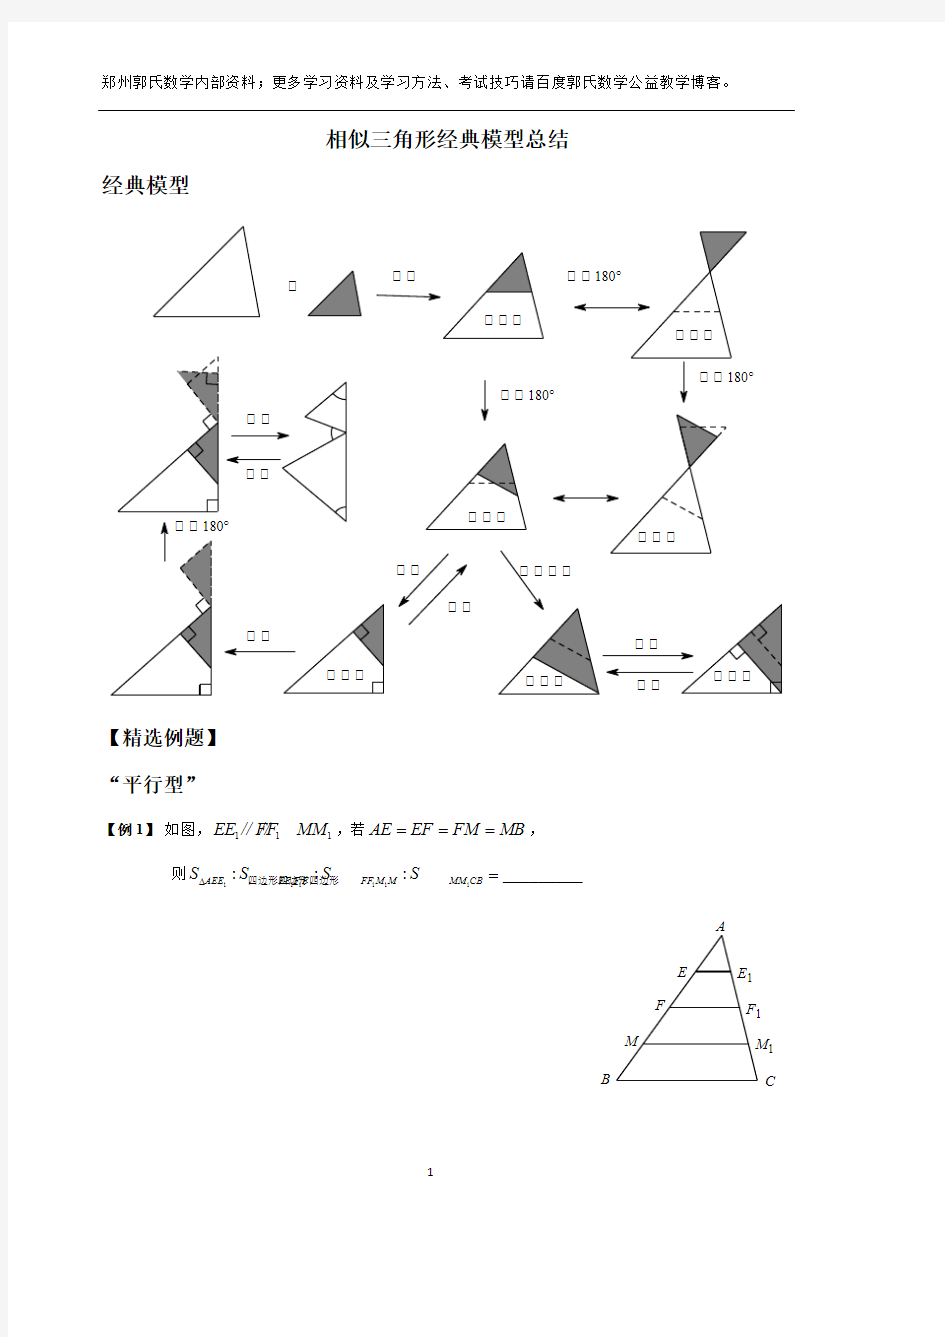 (完整)相似三角形经典模型总结,推荐文档